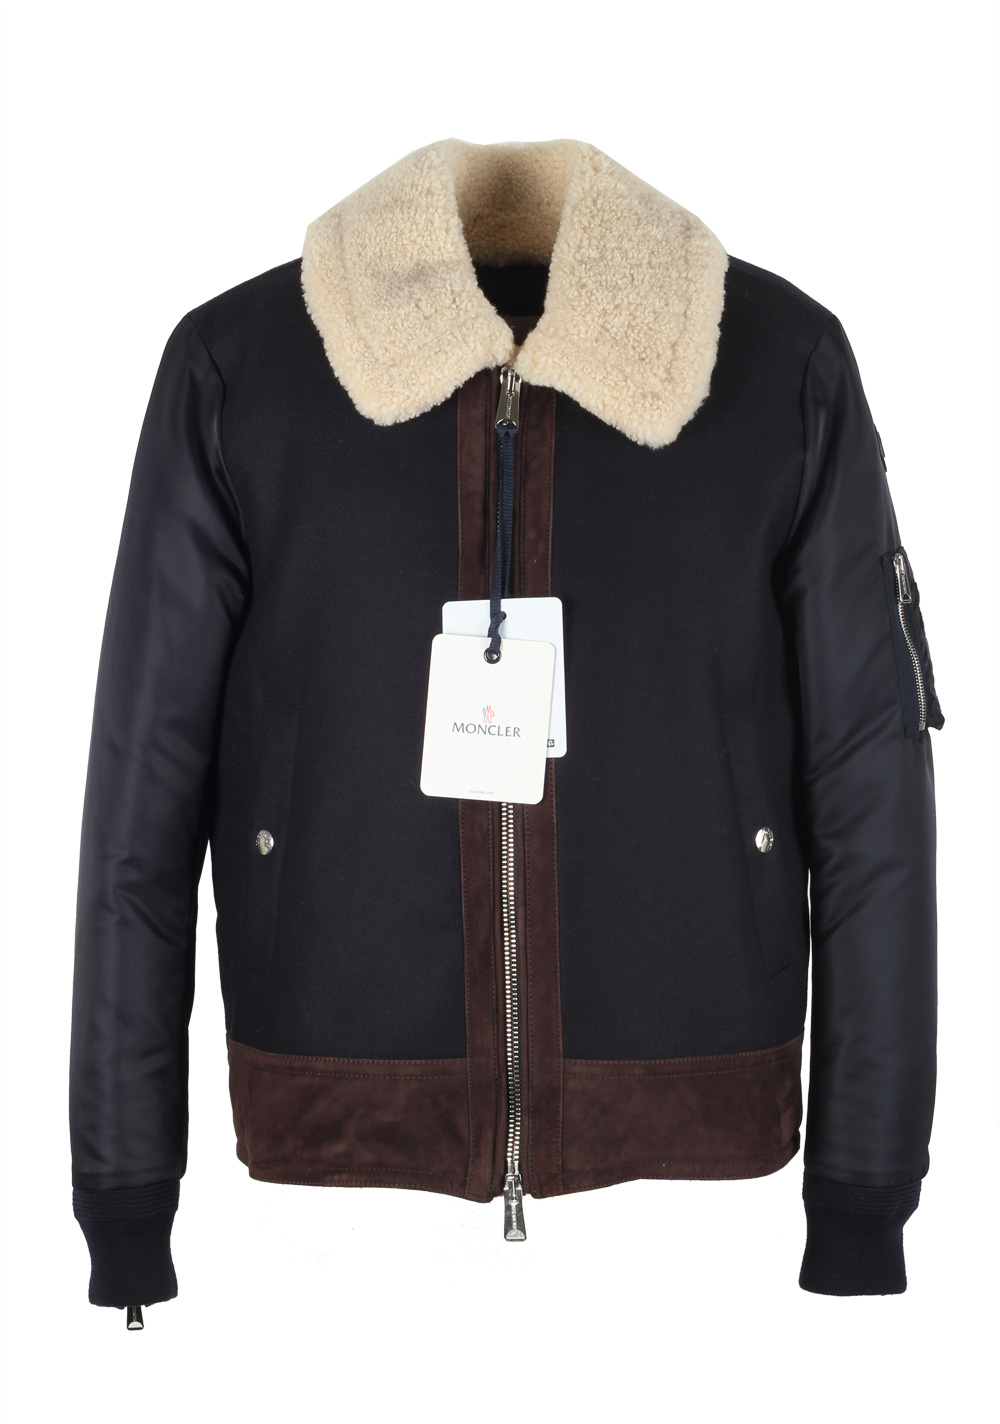 size 3 moncler coat